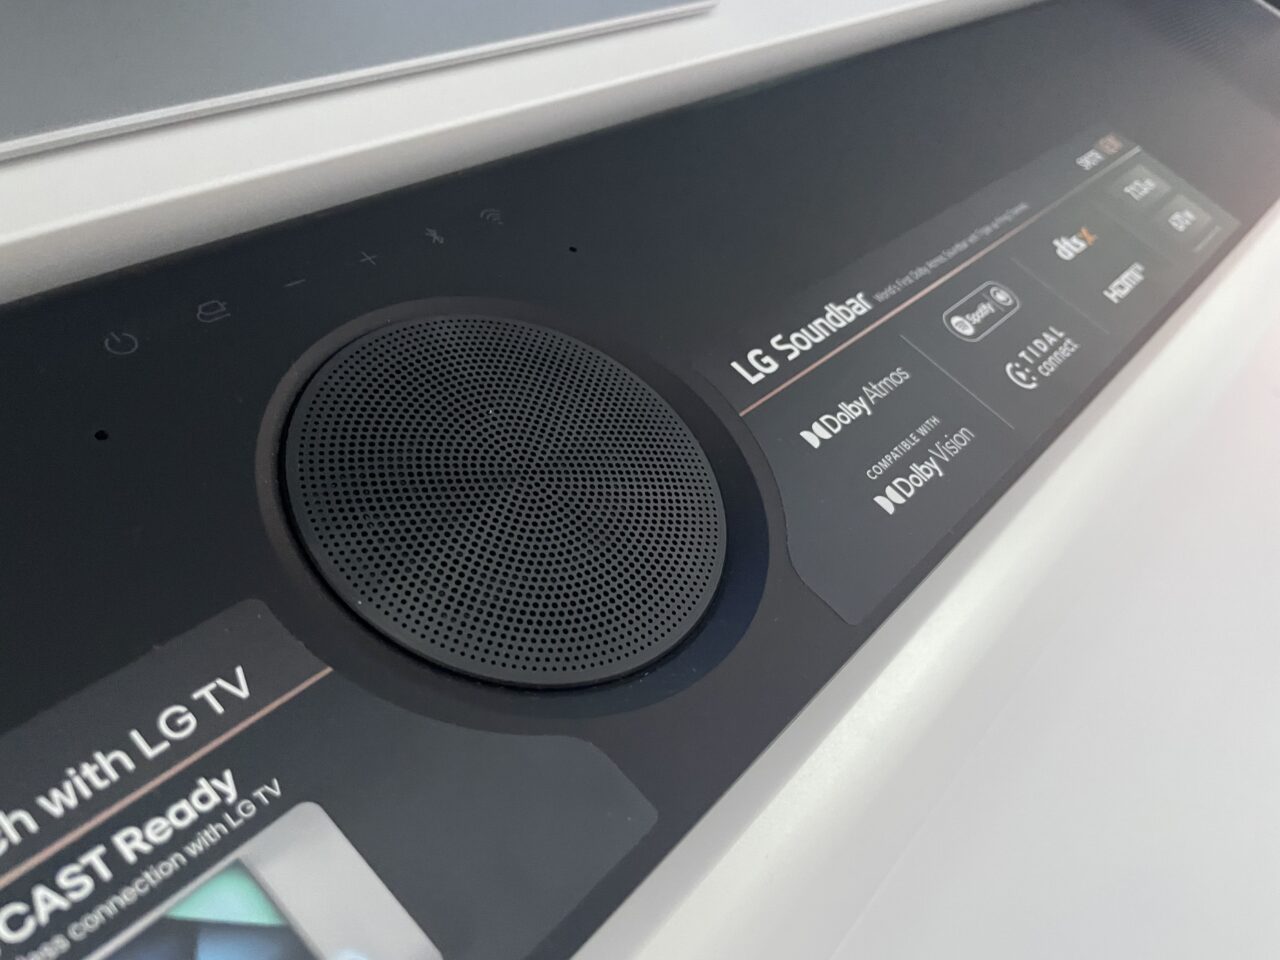 Zbliżenie na część górnej powierzchni czarnego soundbaru LG z logo i funkcjami Dolby Atmos, Dolby Vision oraz symbolami sterowania.